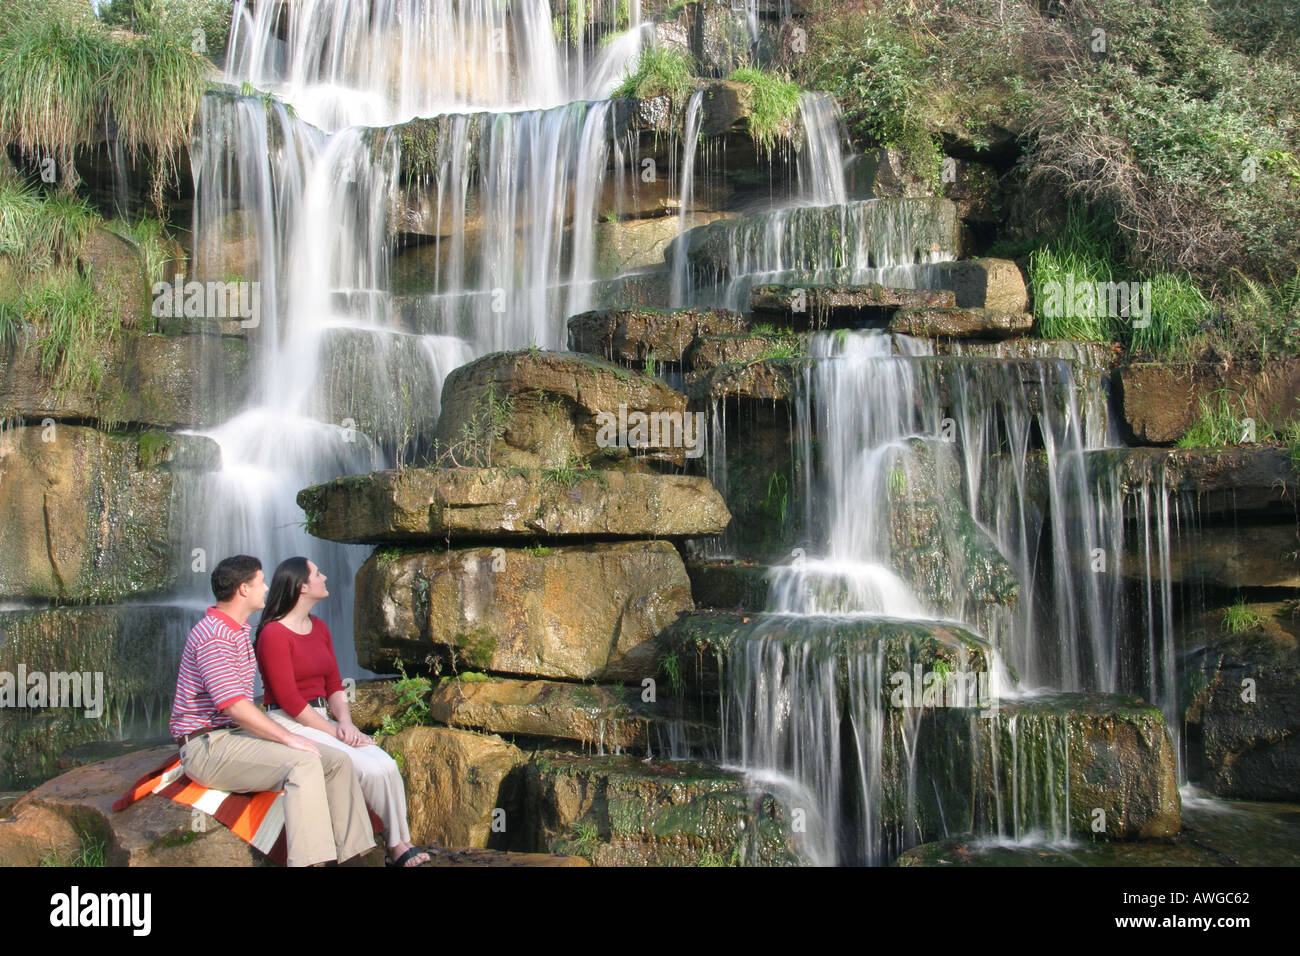 Alabama Colbert County, Tuscumbia, Spring Creek Park, Cold Water Falls, la plus grande cascade de pierre naturelle artificielle du monde, couple, adultes homme hommes hommes, W Banque D'Images